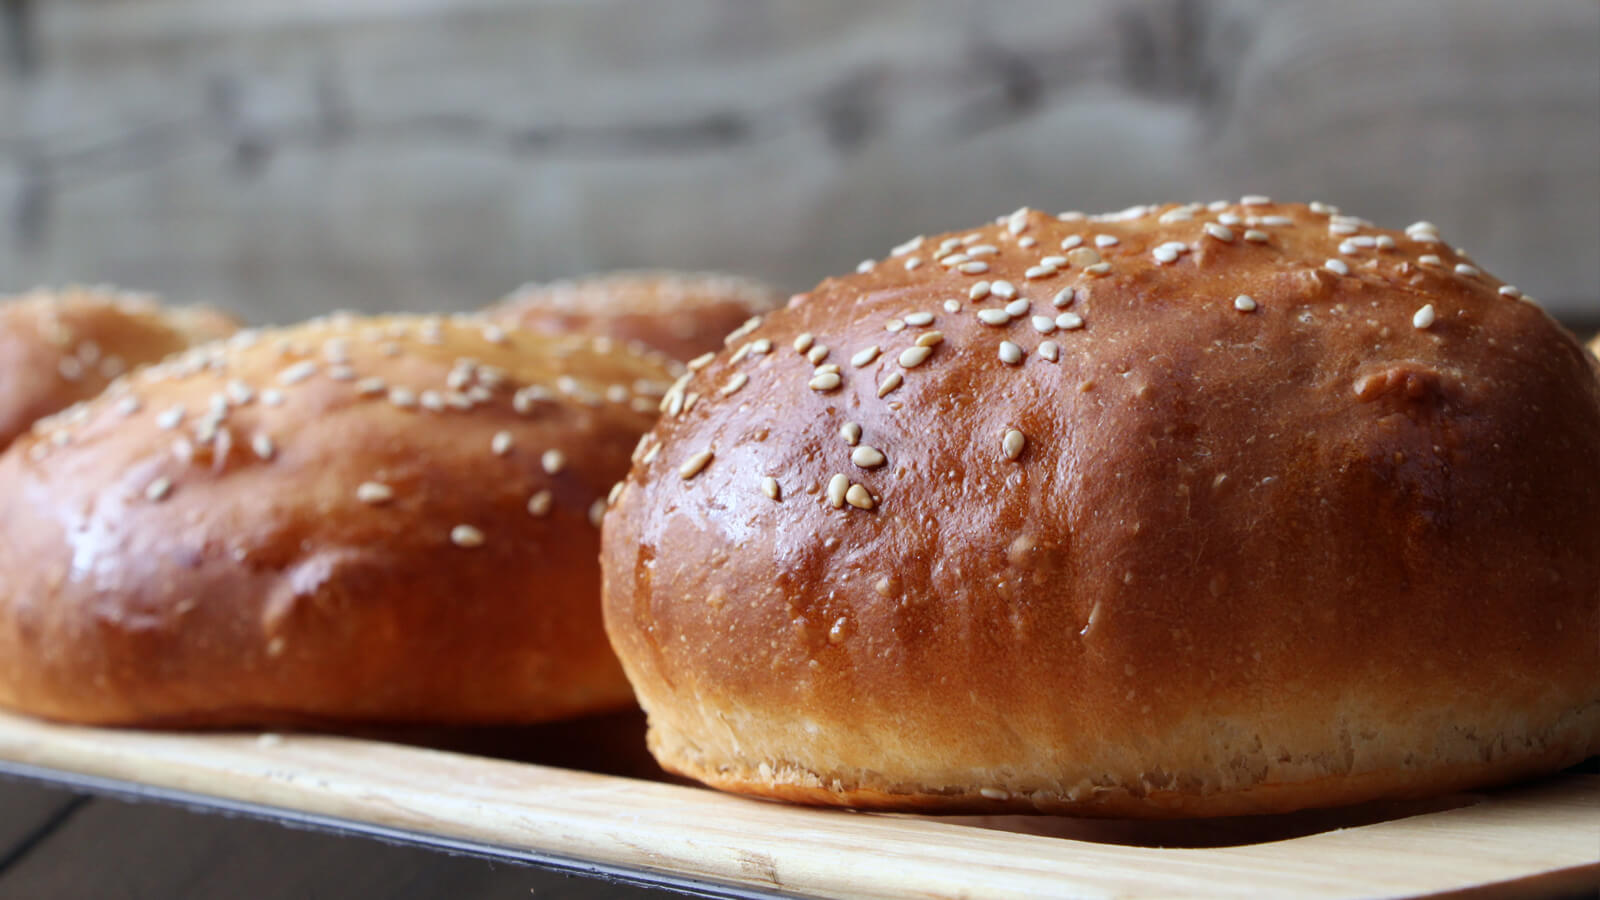 Met dit recept voor brioche burger broodjes heb je het perfecte broodje voor jouw burgers!